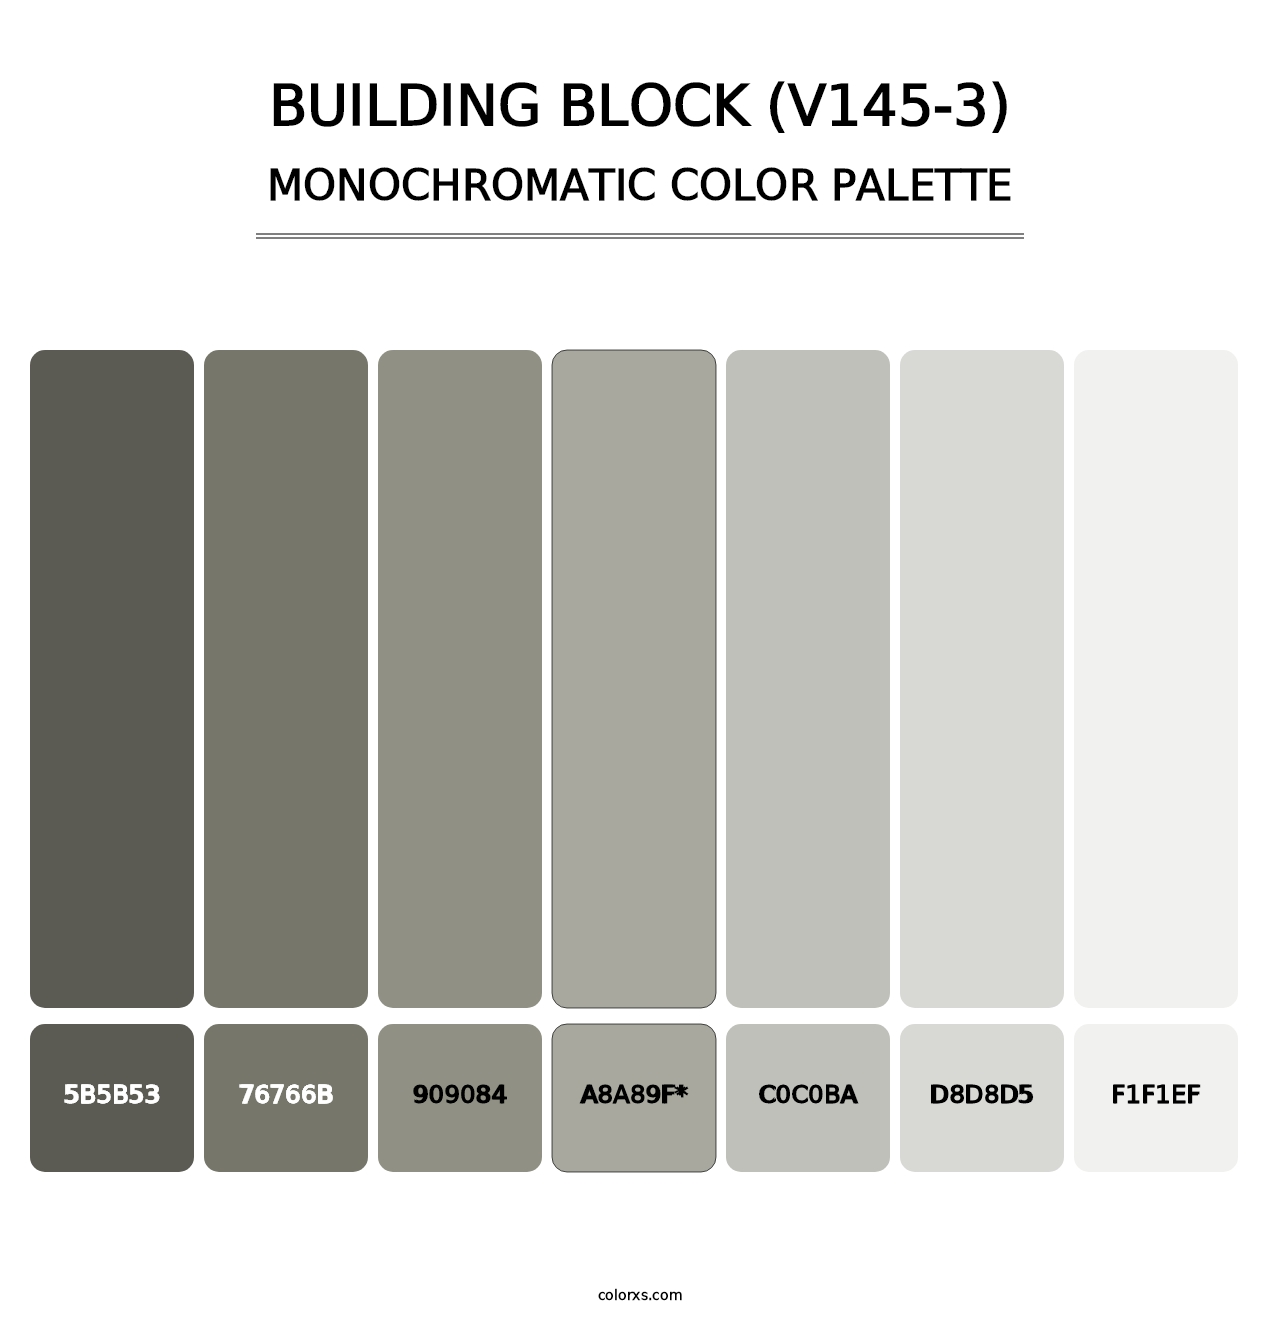 Building Block (V145-3) - Monochromatic Color Palette